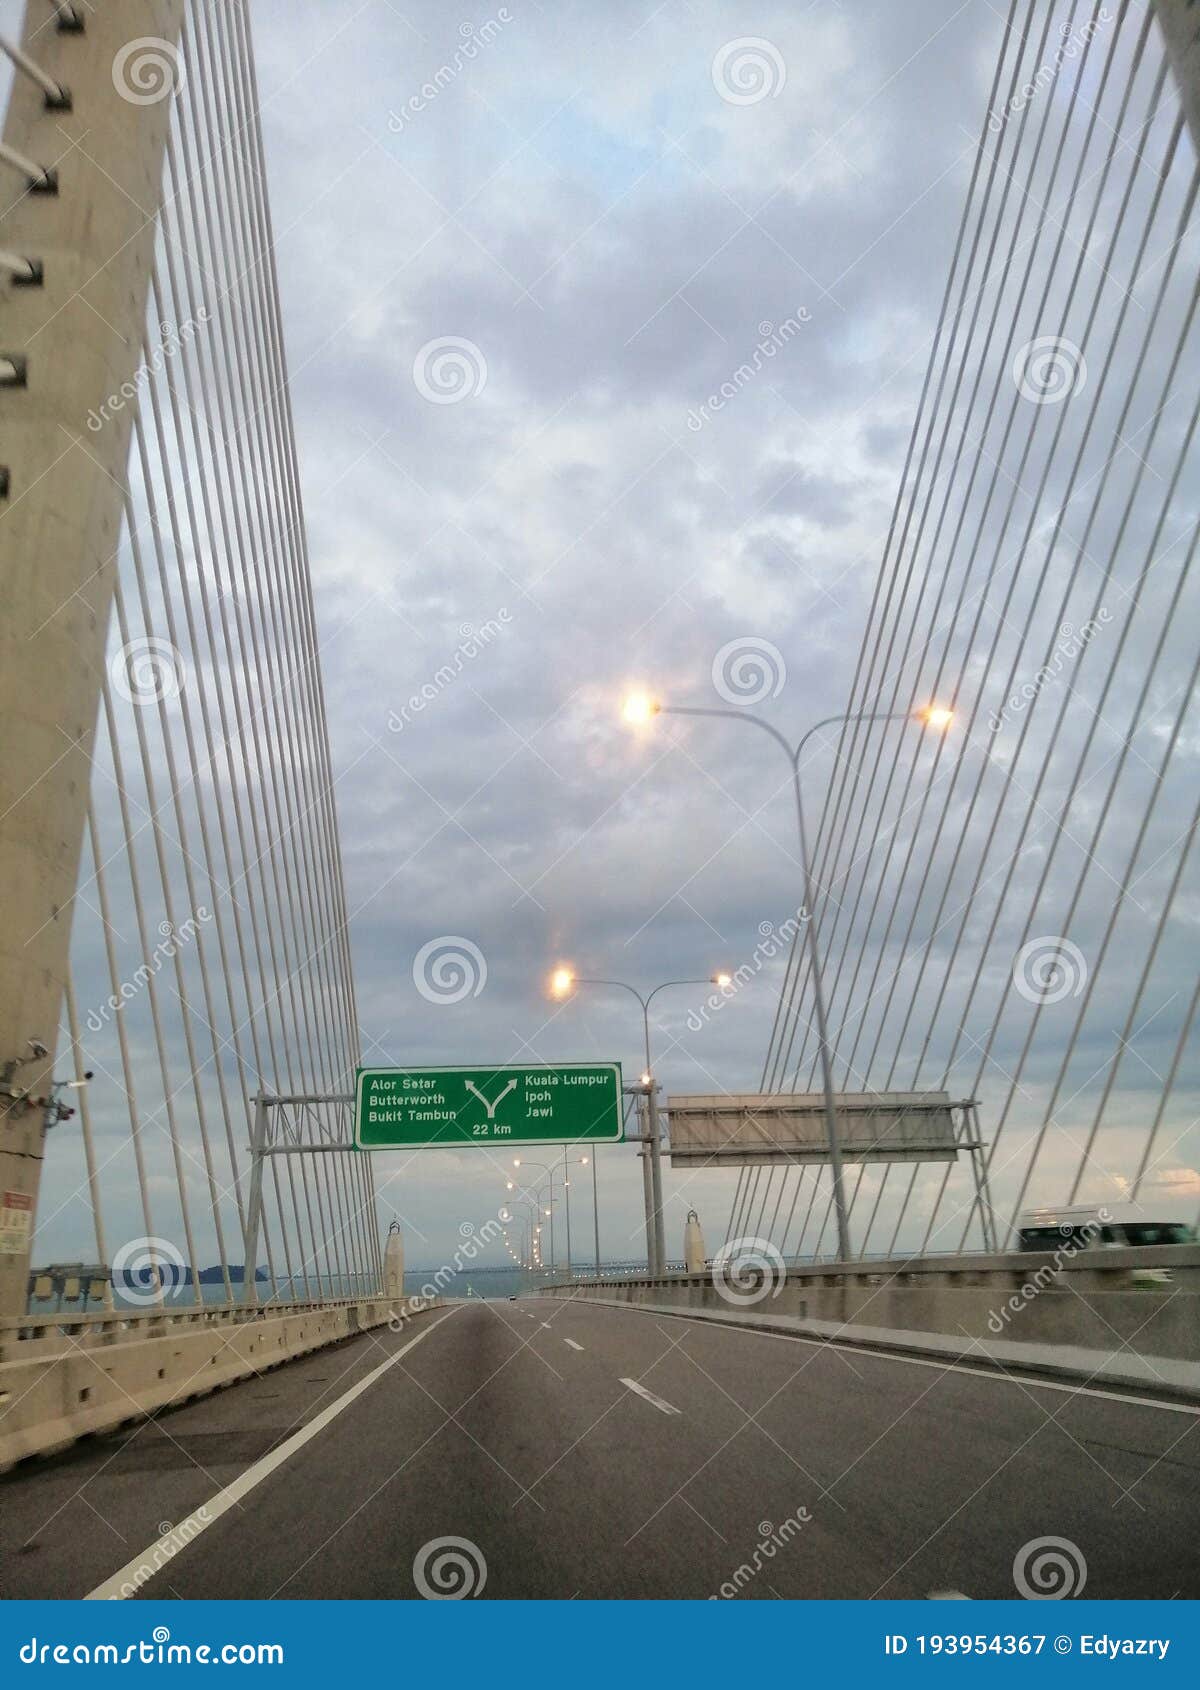 penang bridge pulau pinang malaysia